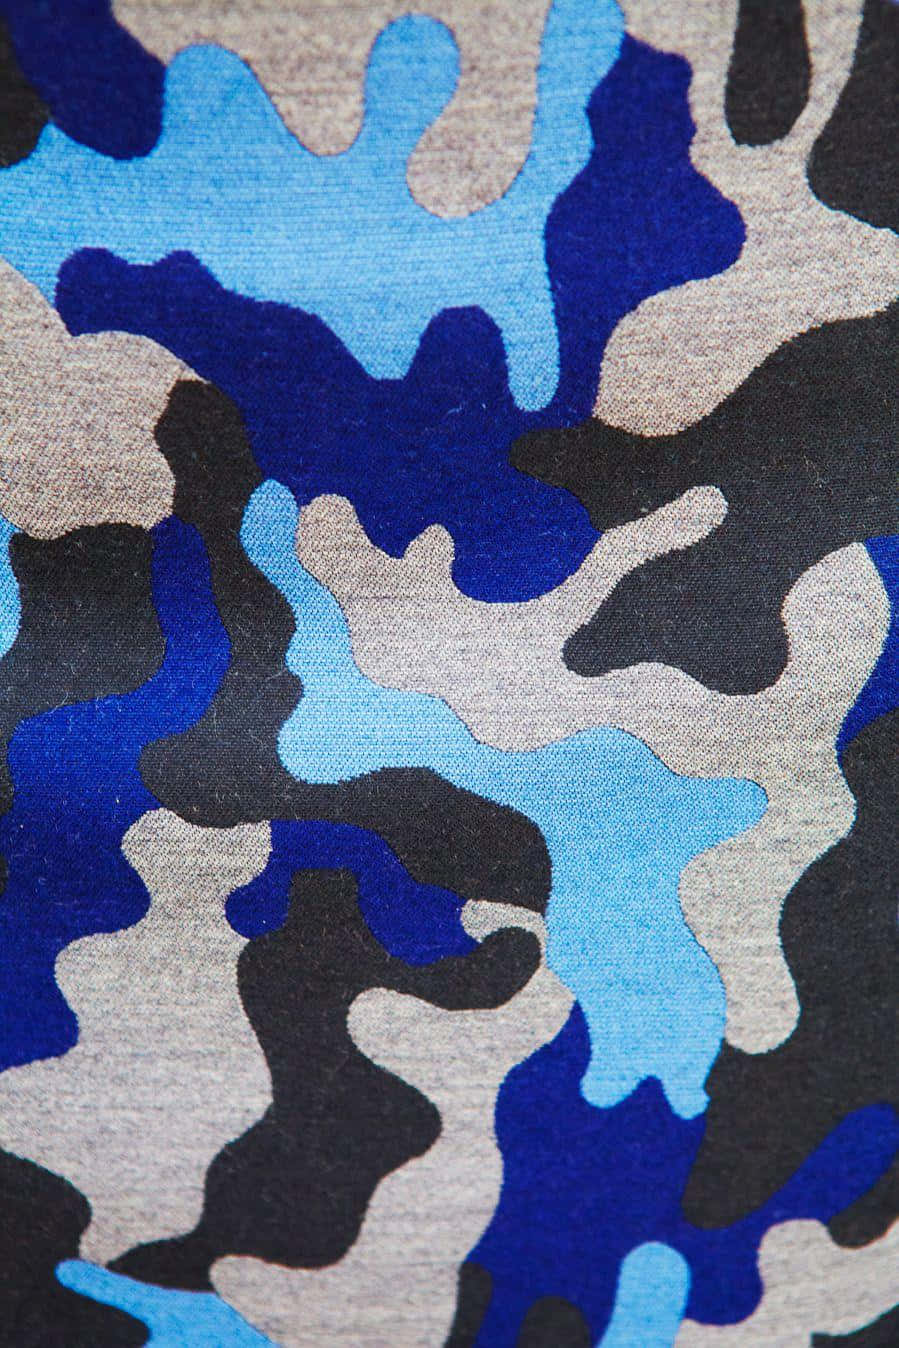 Attraktiv blå camouflage design kombinerer klassisk stil og moderne tendenser til en spændende ny udseende. Wallpaper